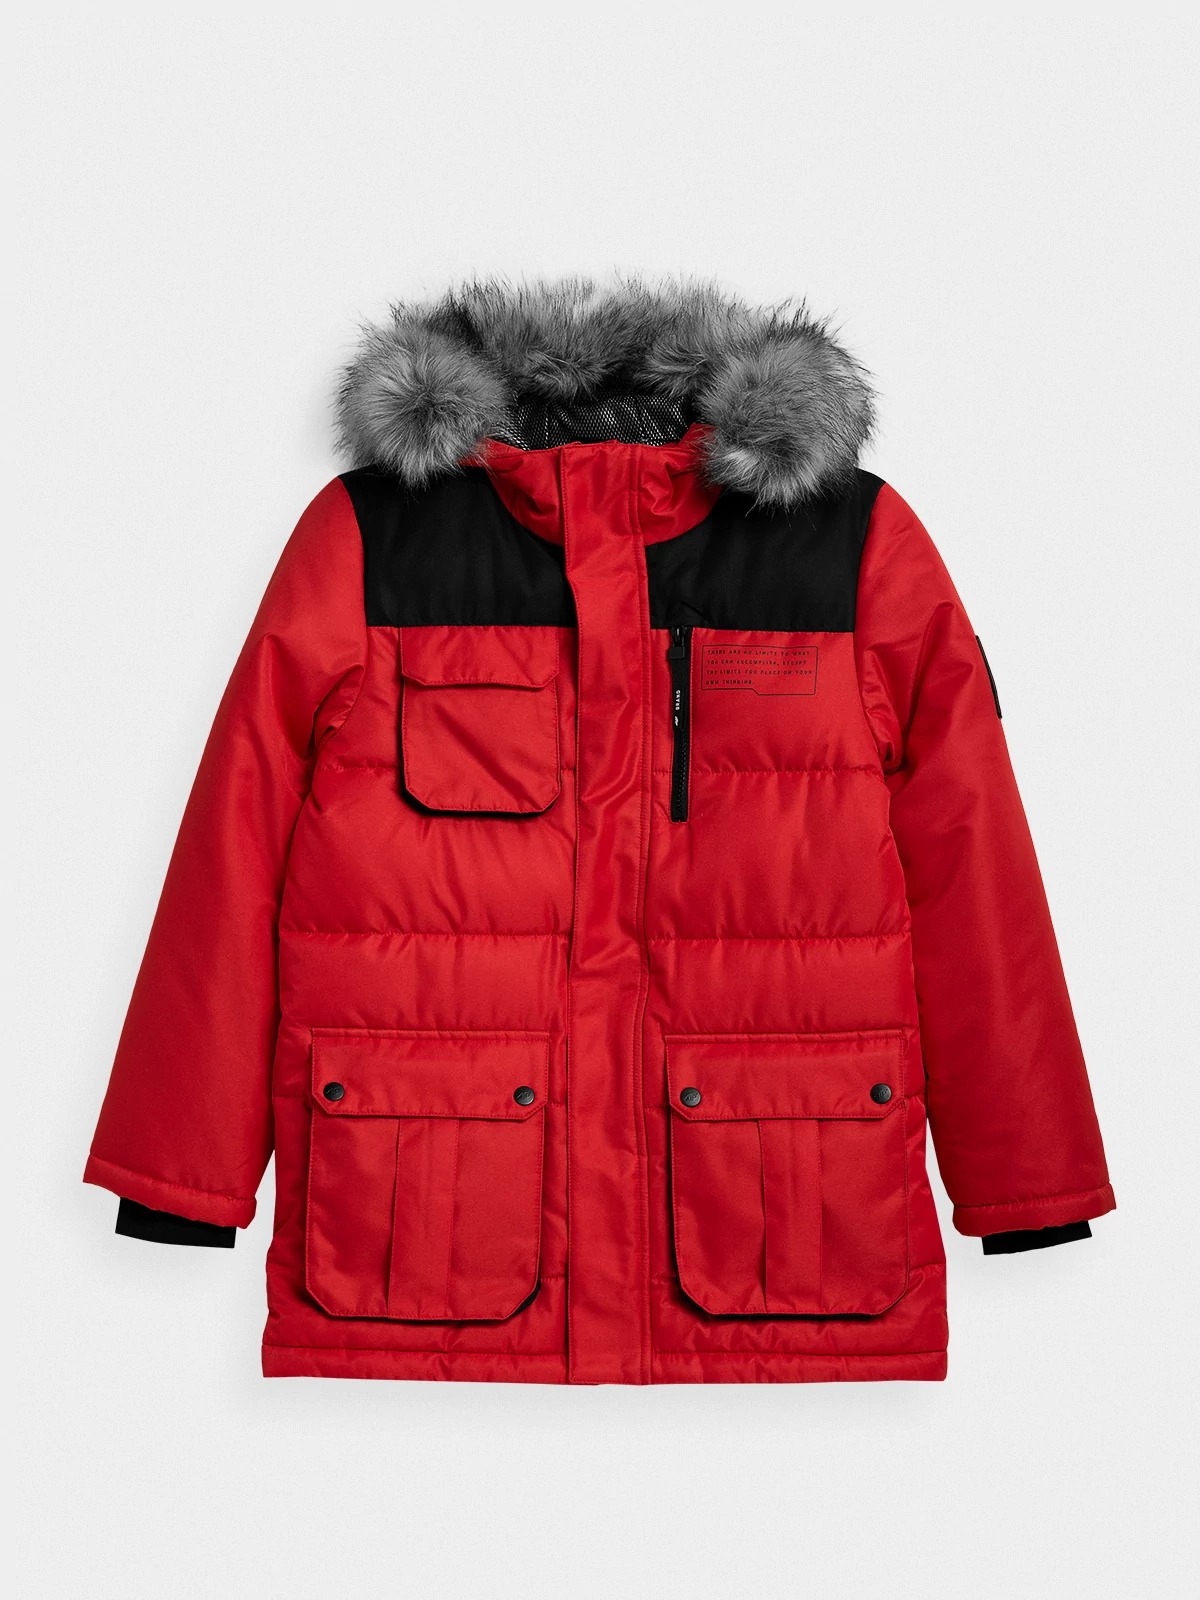 фото Куртка 4f boy's jackets hjz21-jkum001-62s цв.красный р. 134